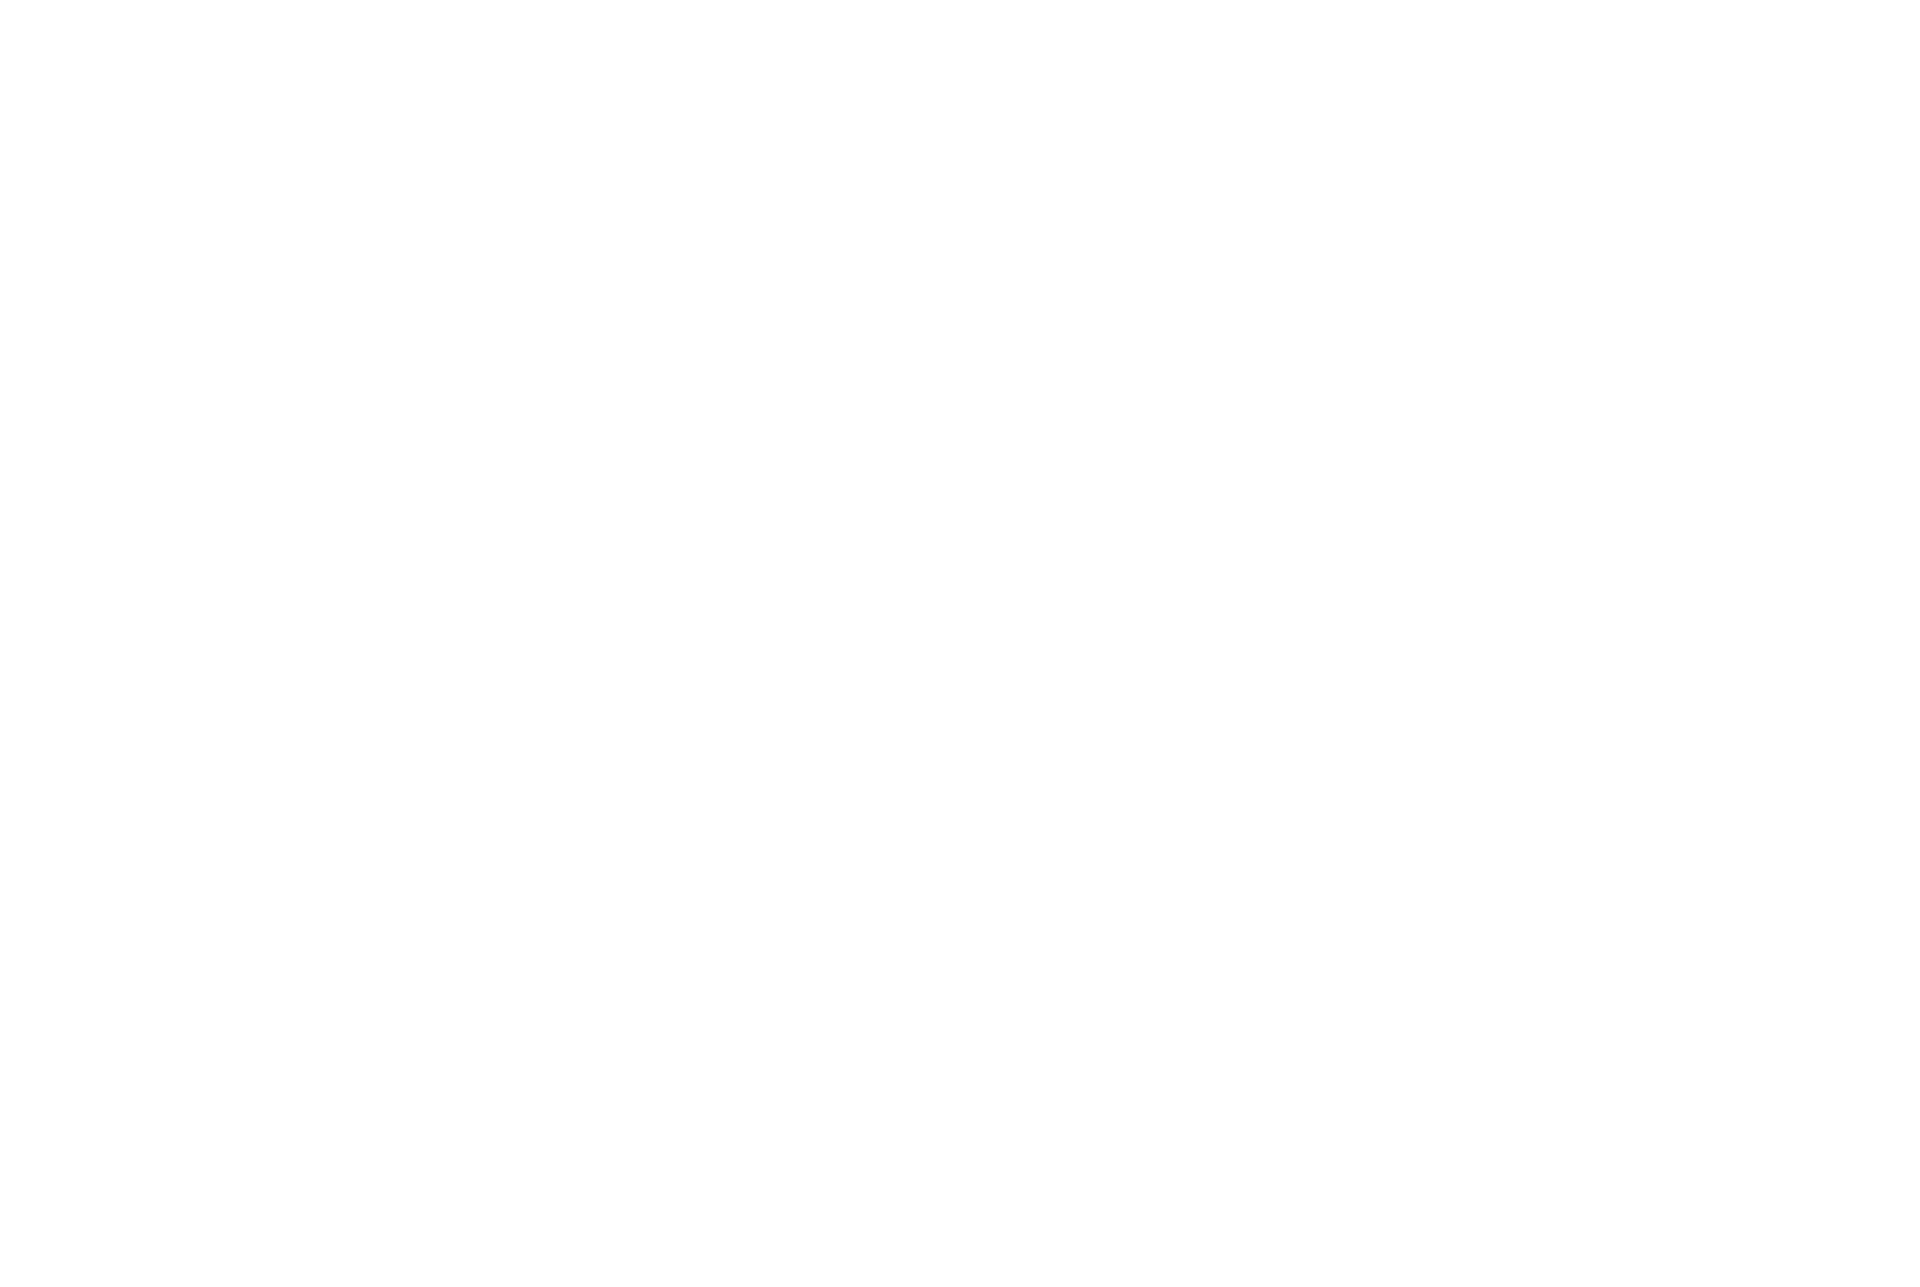 DRG Logo - DRG Visuals - Logos